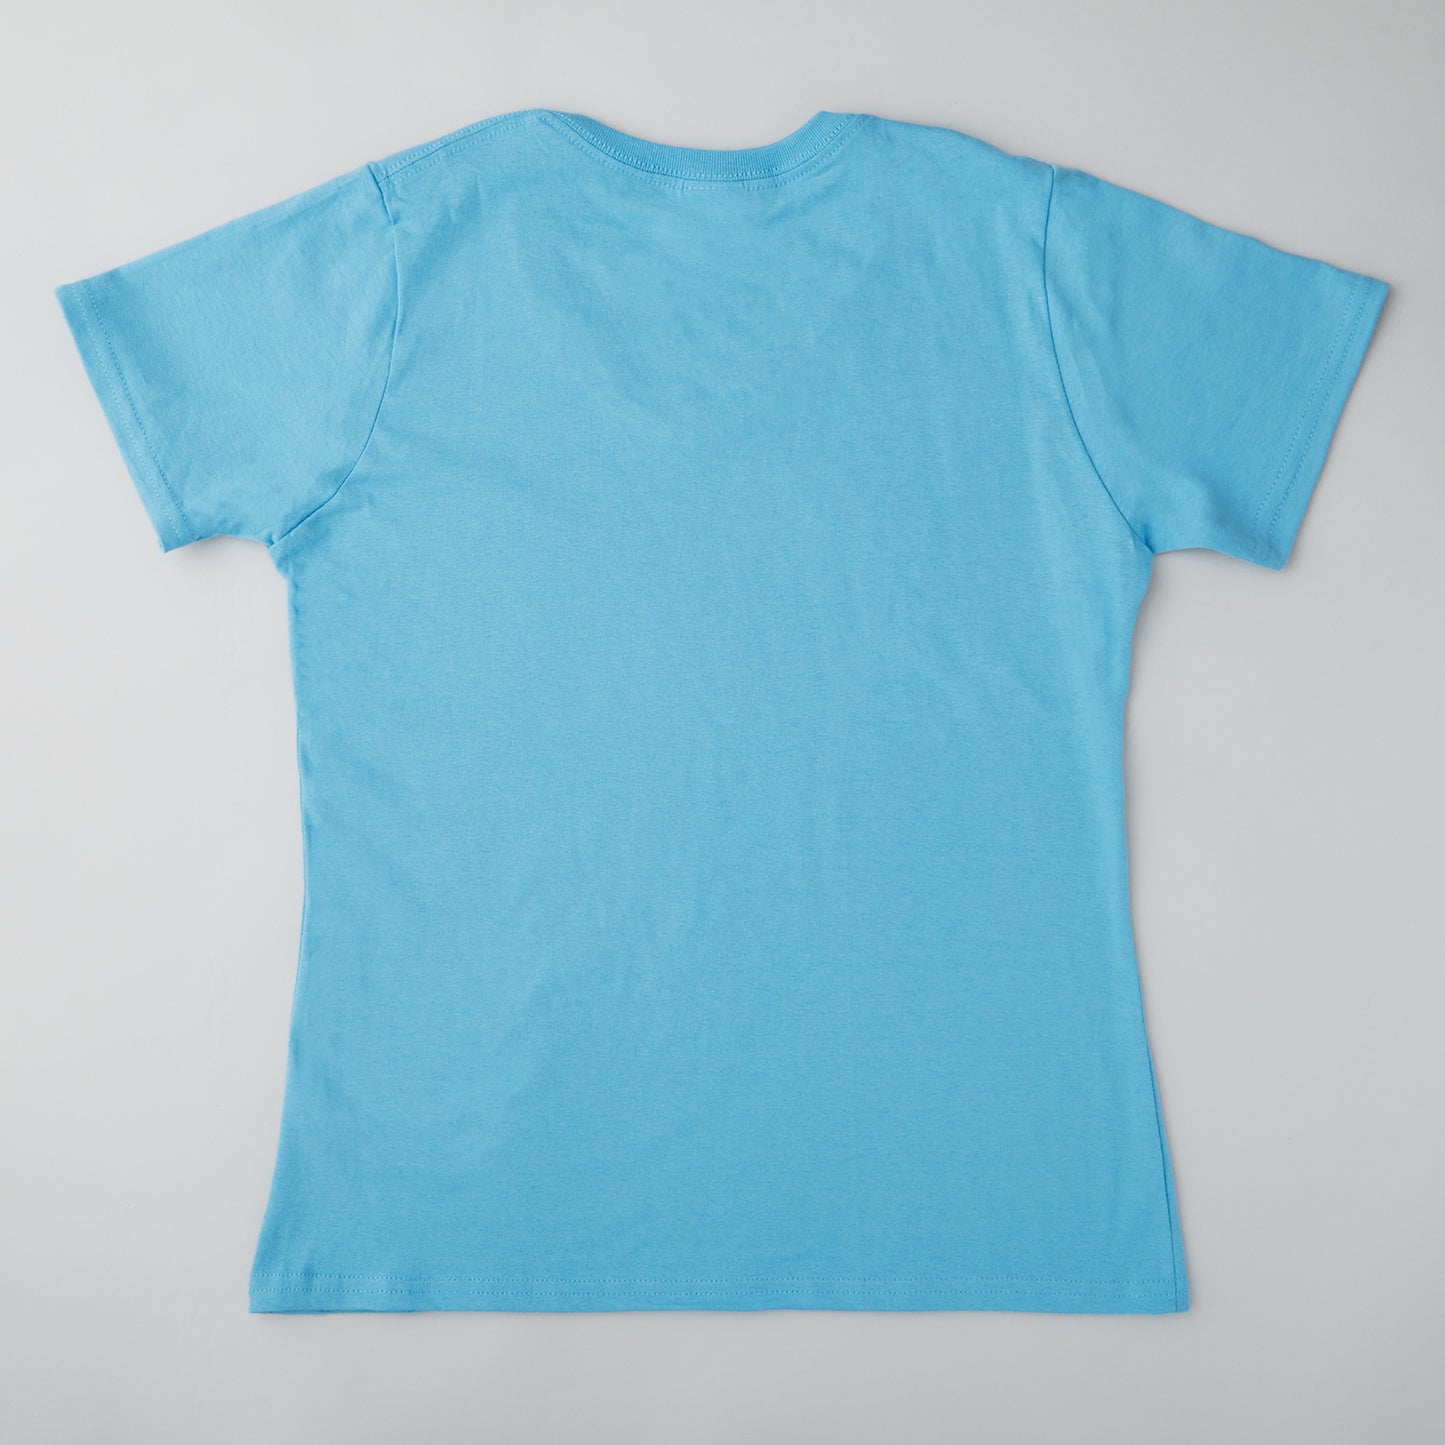 Quiltmaker T-shirt - Aquatic Blue M Alternative View #1